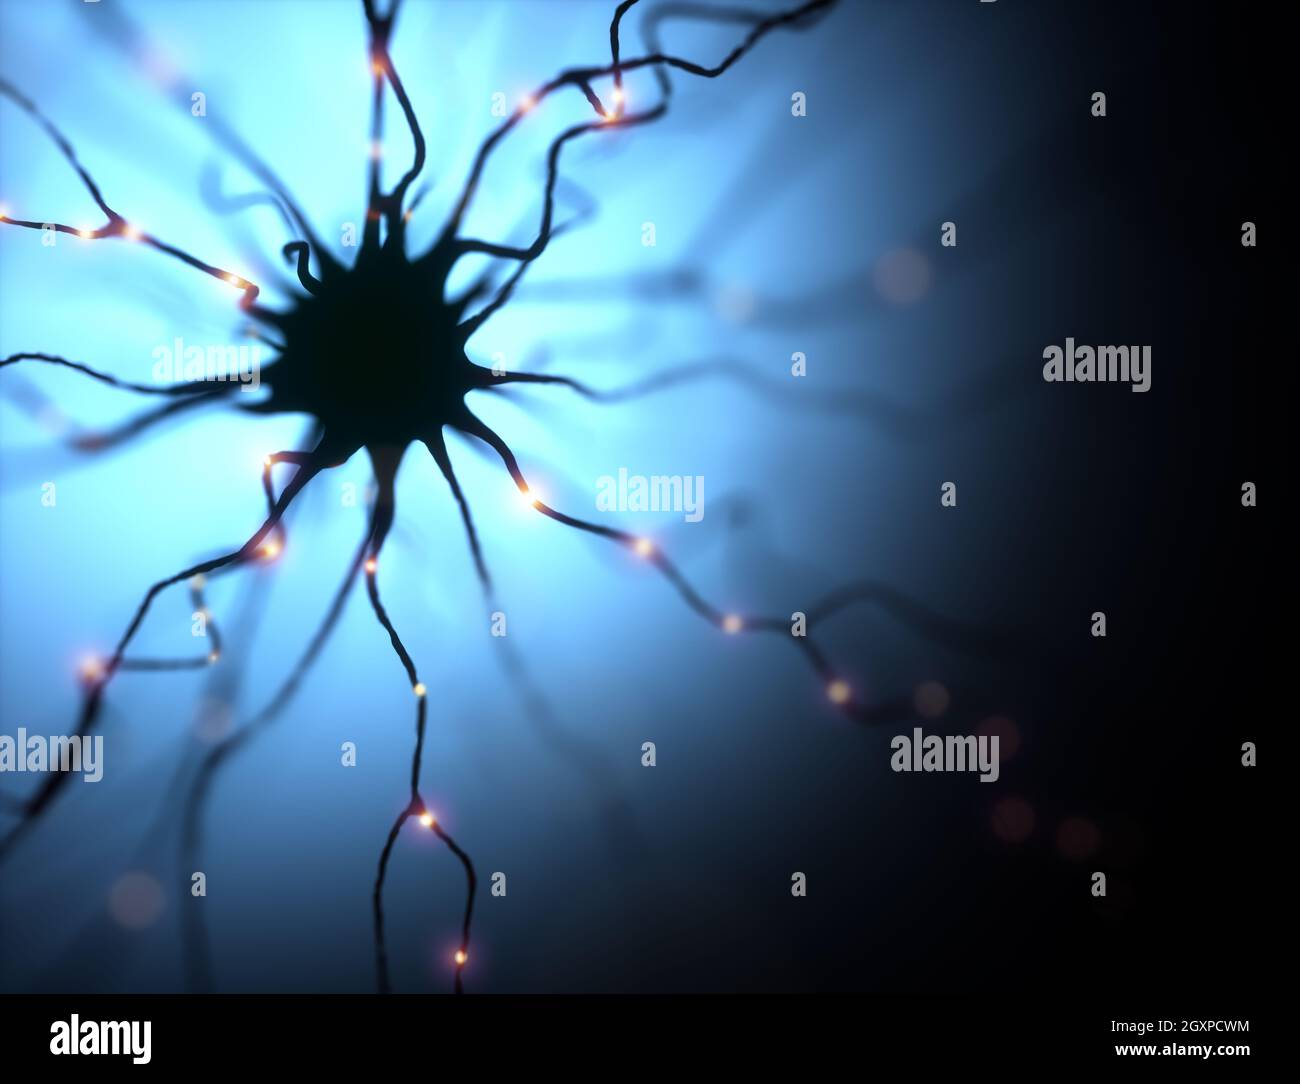 Illustration 3D, neurones et leurs connexions. Simulation photo microscopique du système nerveux humain. Banque D'Images